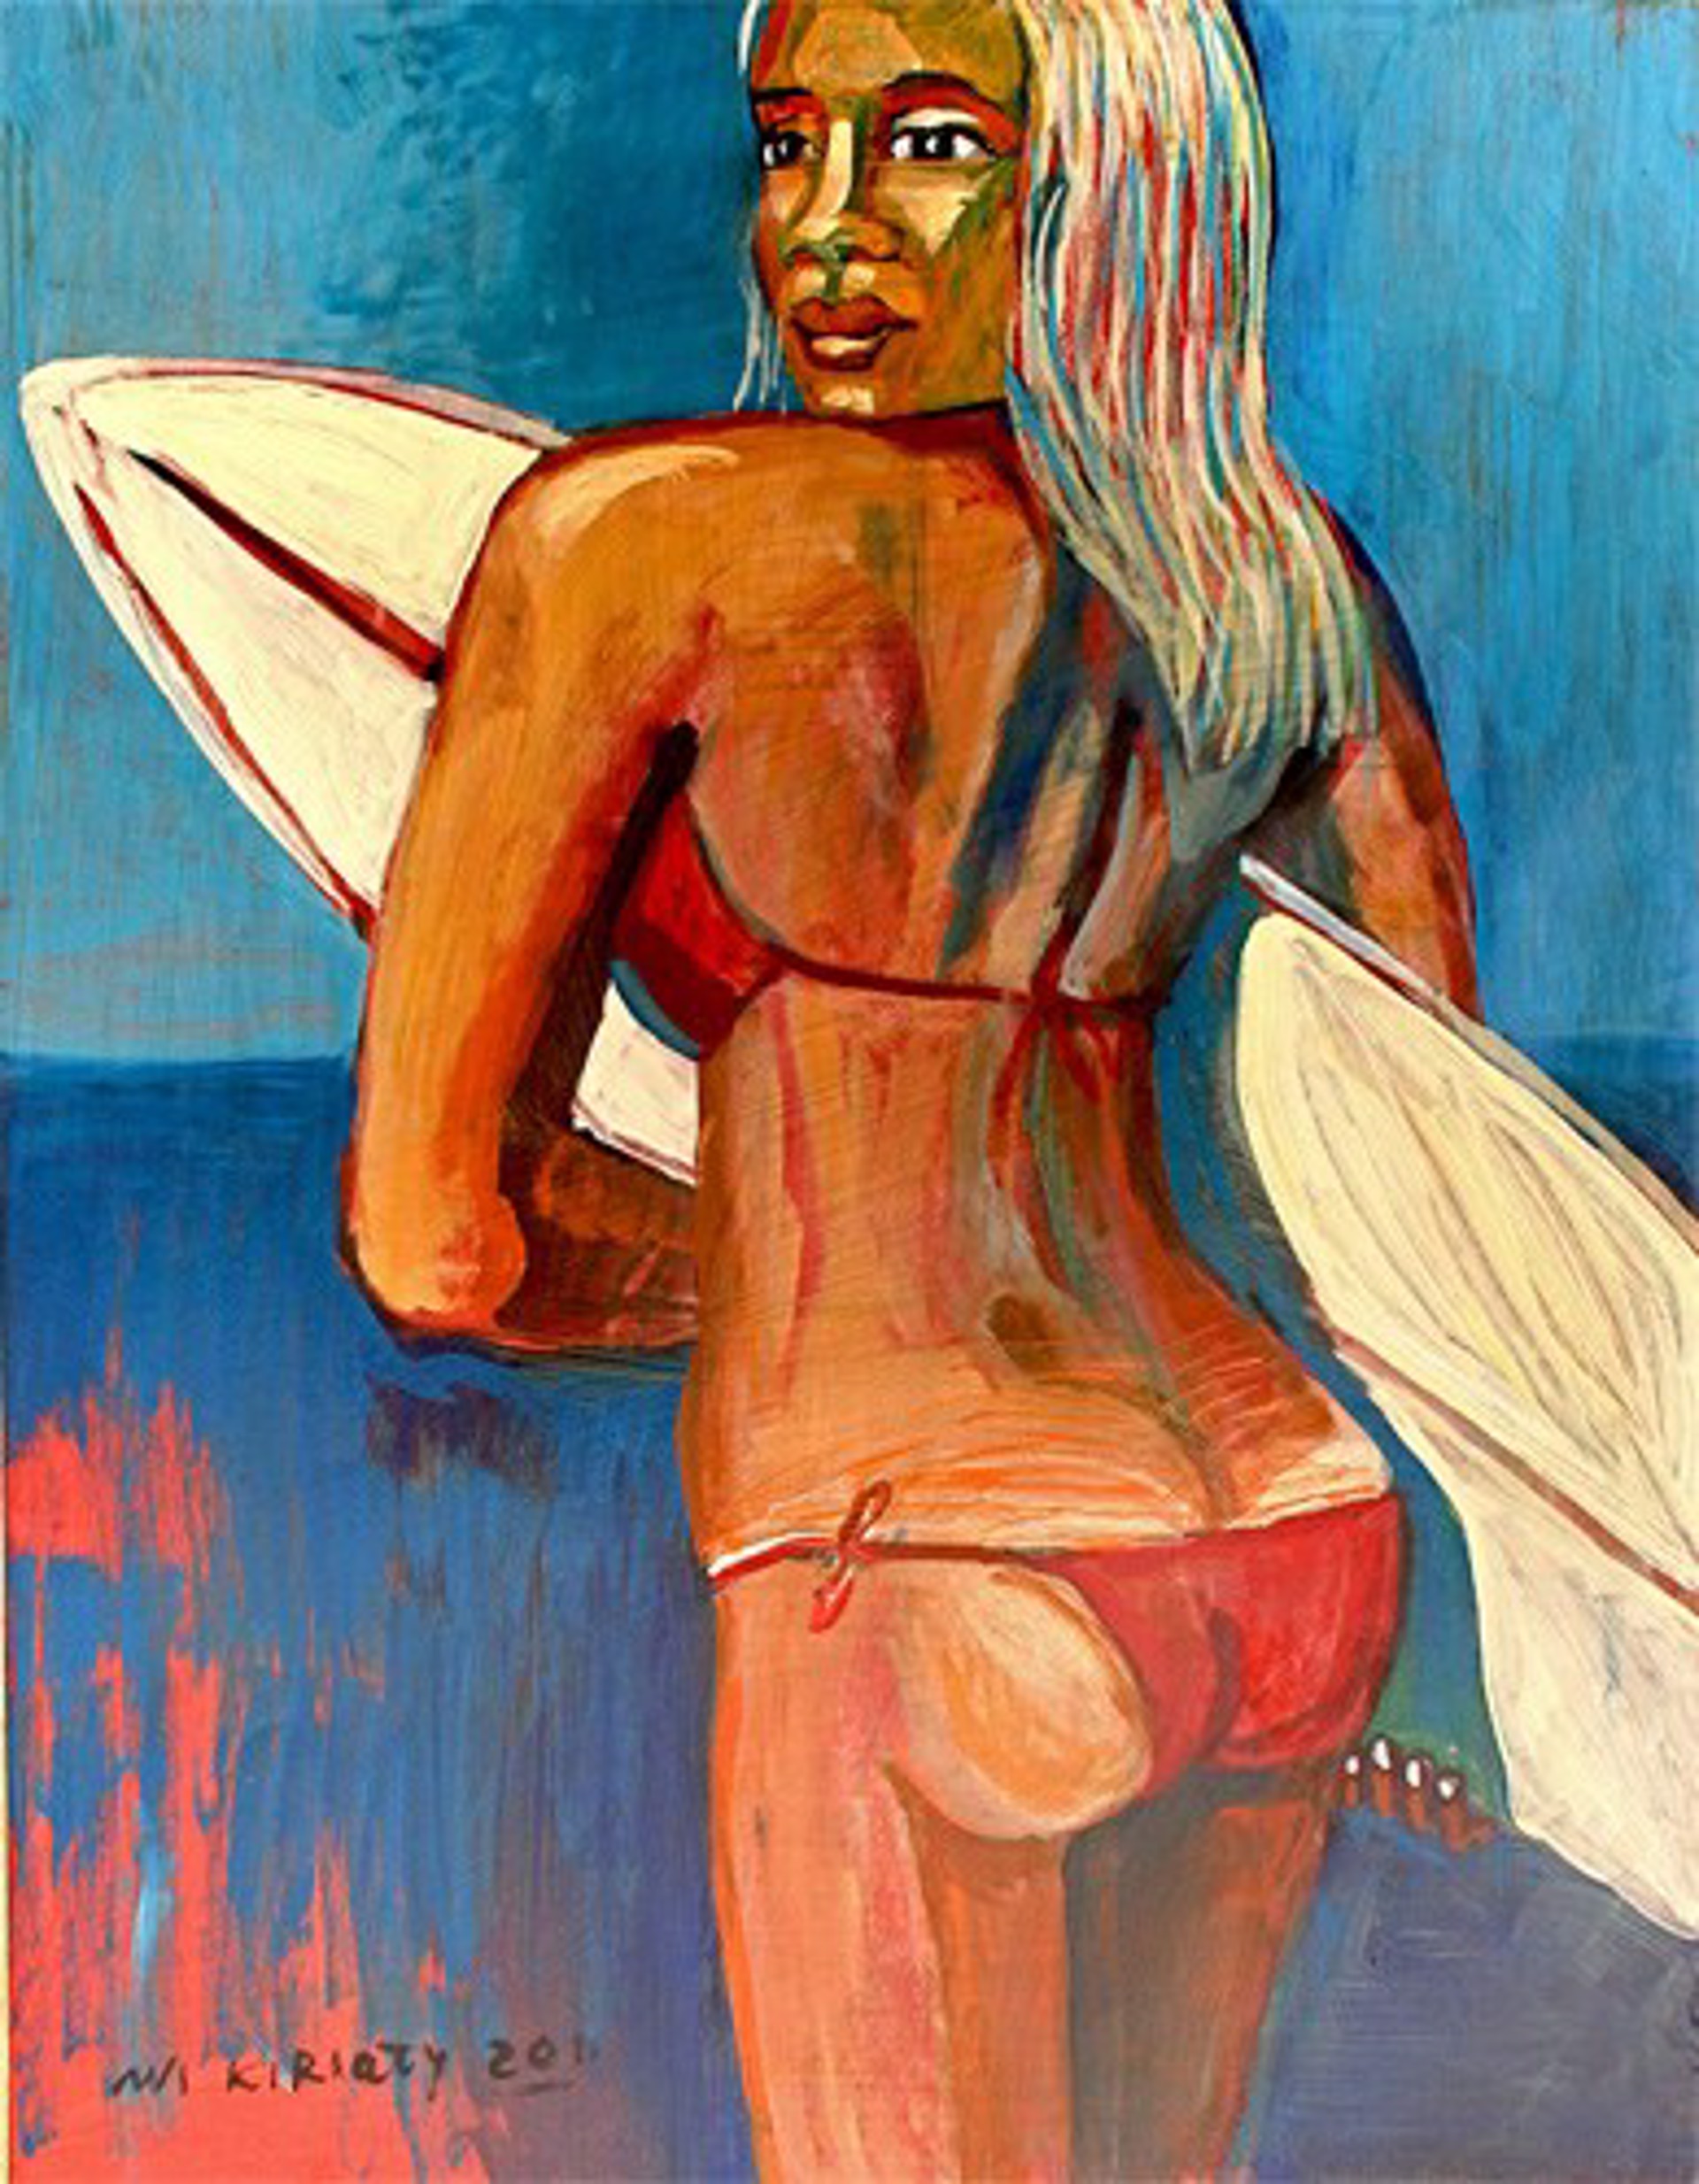 Girl in Red Bikini by Avi Kiriaty